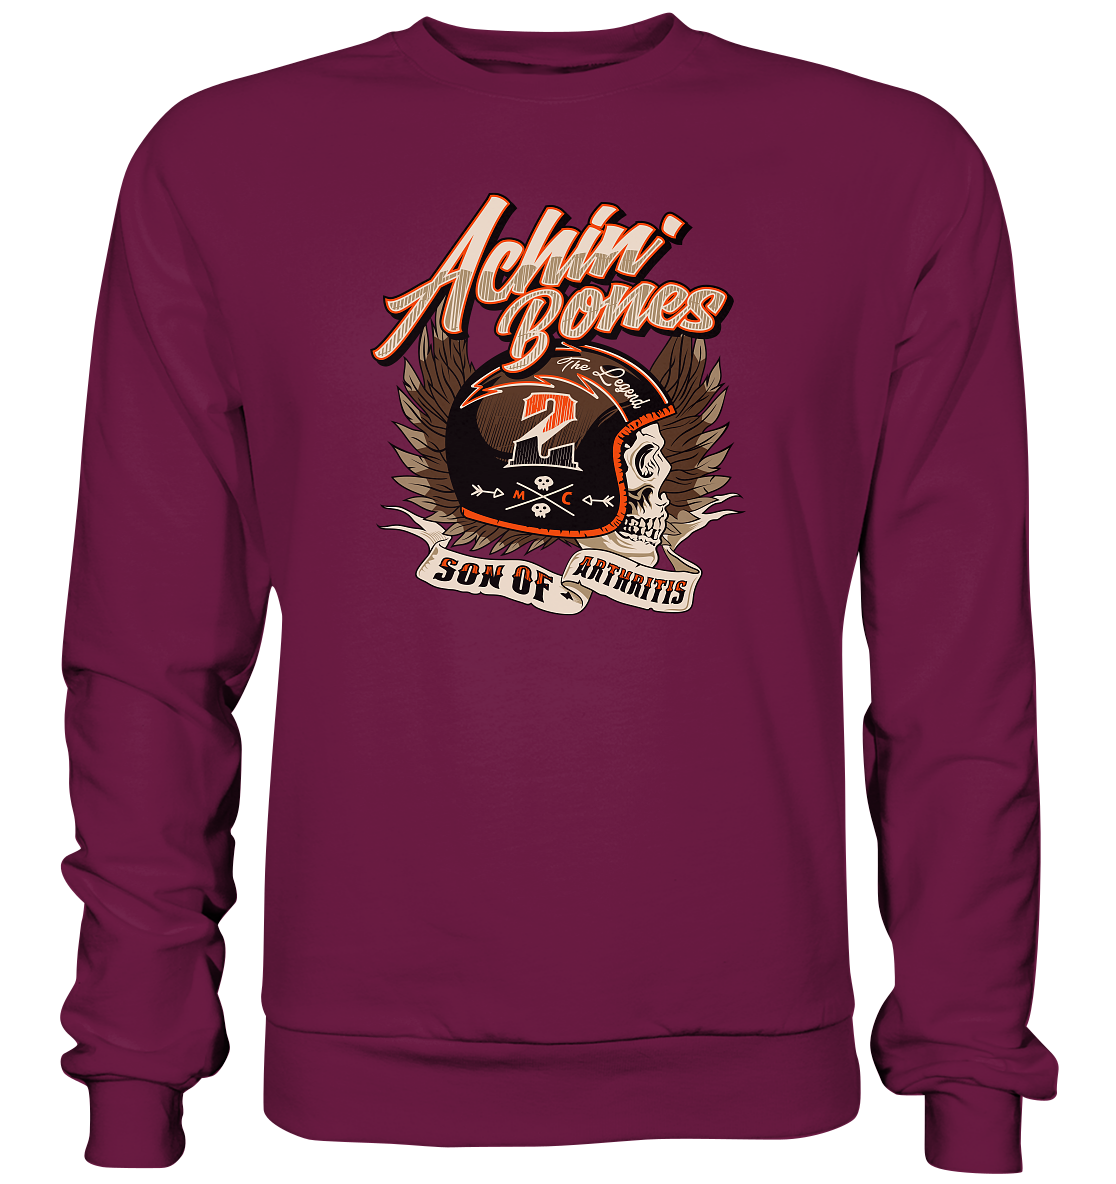 Sons of Arthritis, achine bones - Premium unisex Sweatshirt